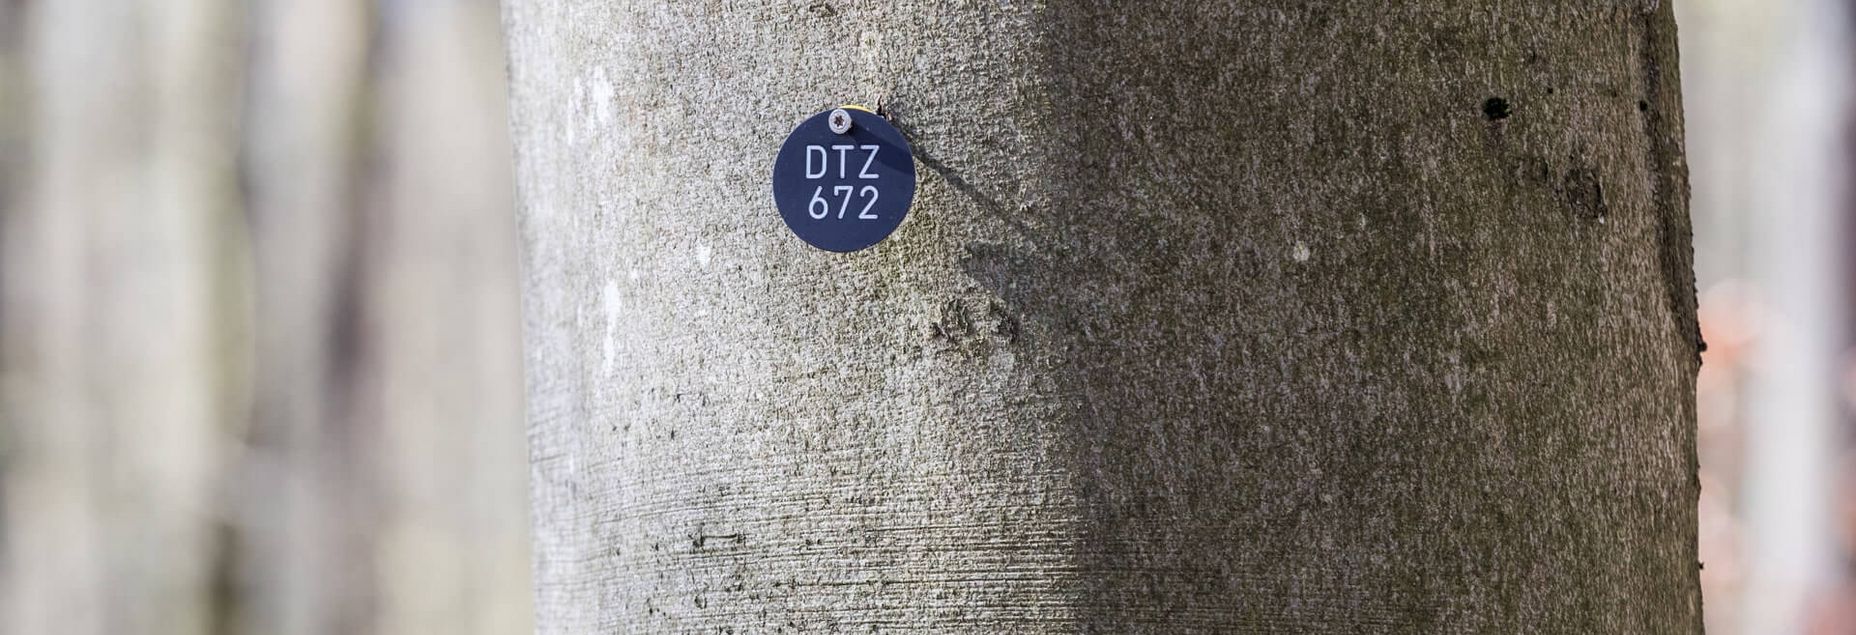 Baum DTZ 672 - Plakette Baumnummer